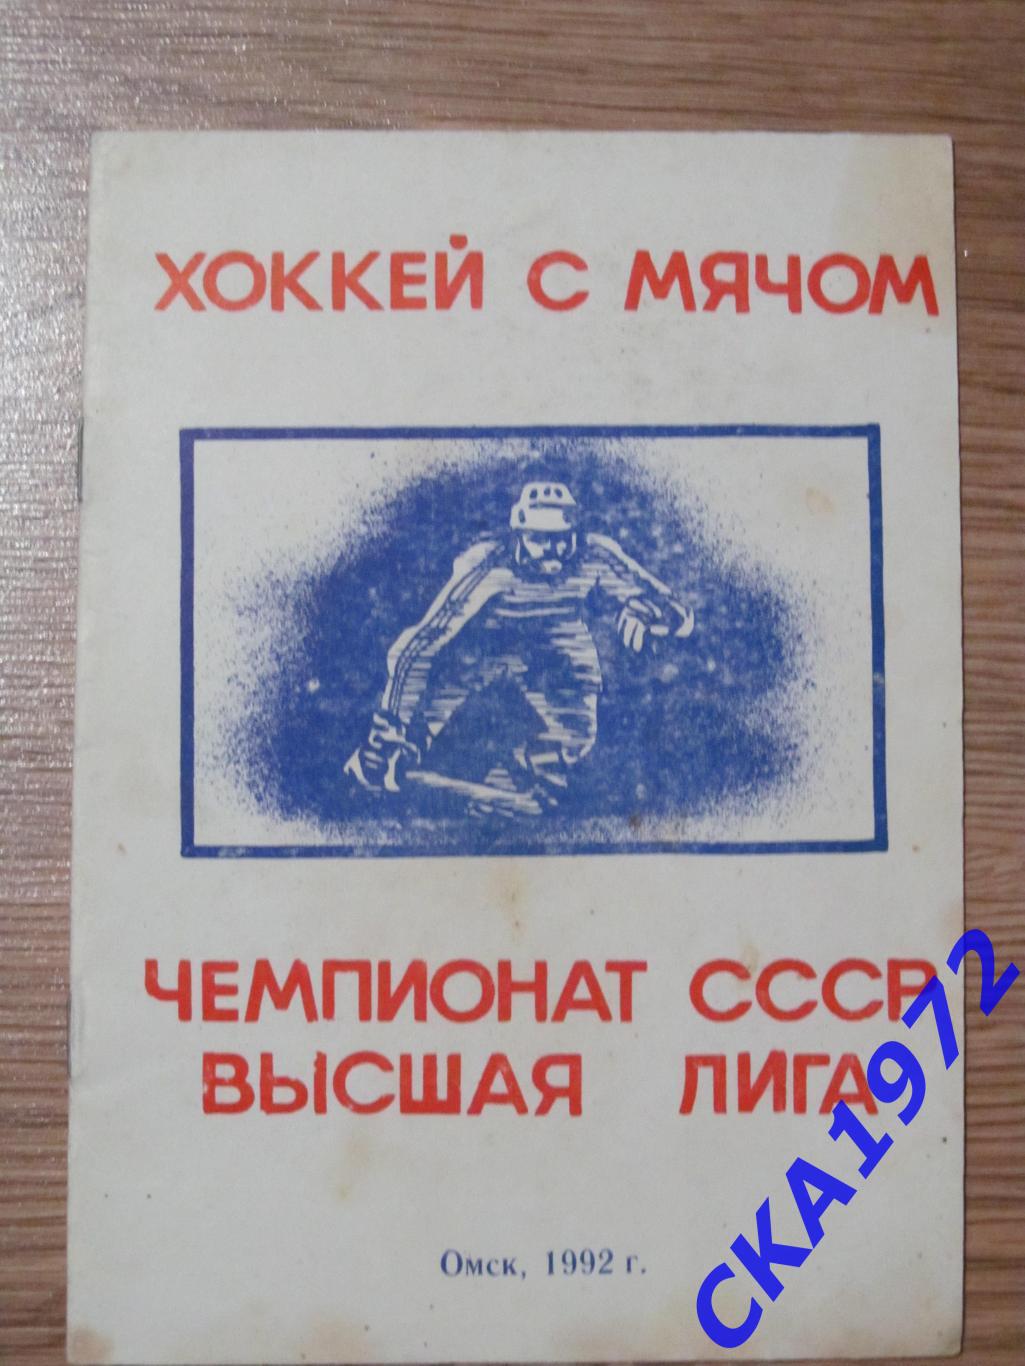 календарь-справочник Юность Омск 1992 хоккей с мячом